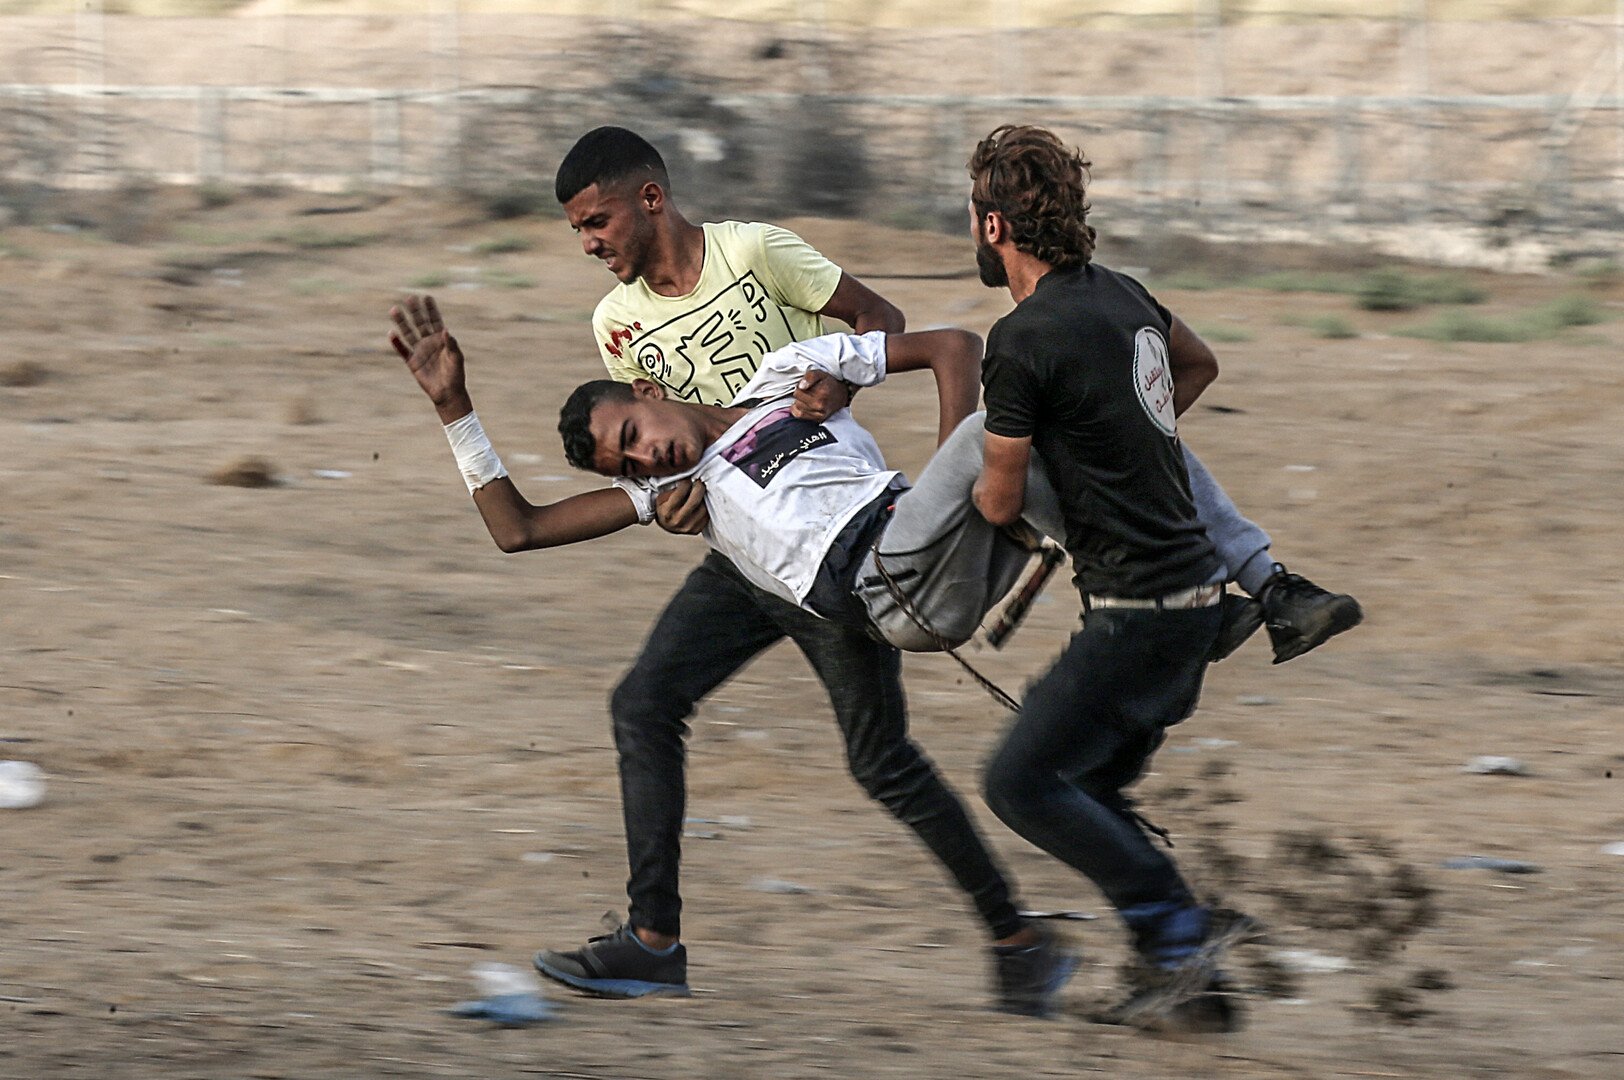 الصحة الفلسطينية: 55 إصابة بجراح مختلفة خلال مسيرات العودة شرقي قطاع غزة